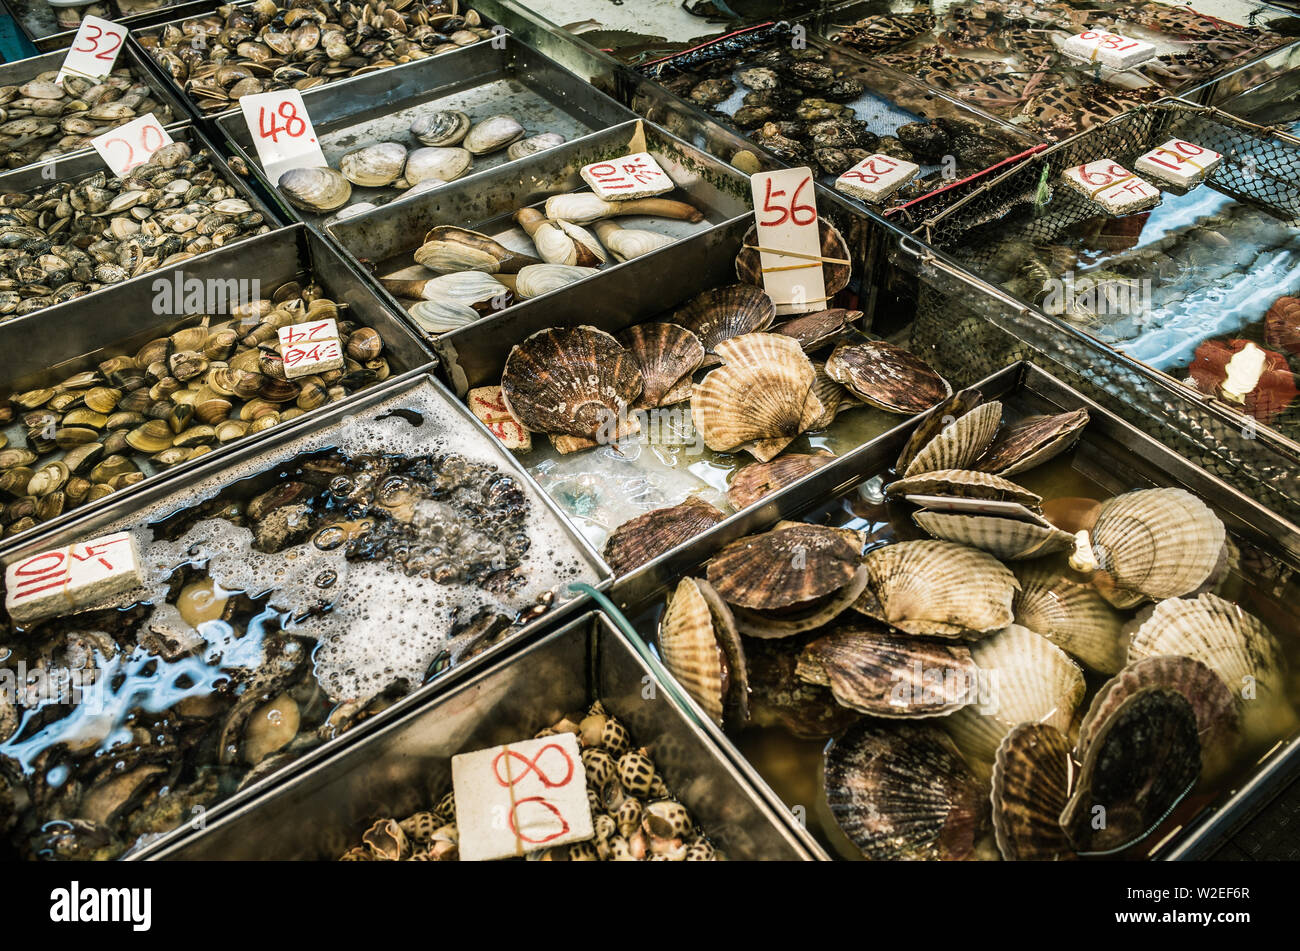 Fish market produce in hong Kong Stock Photo